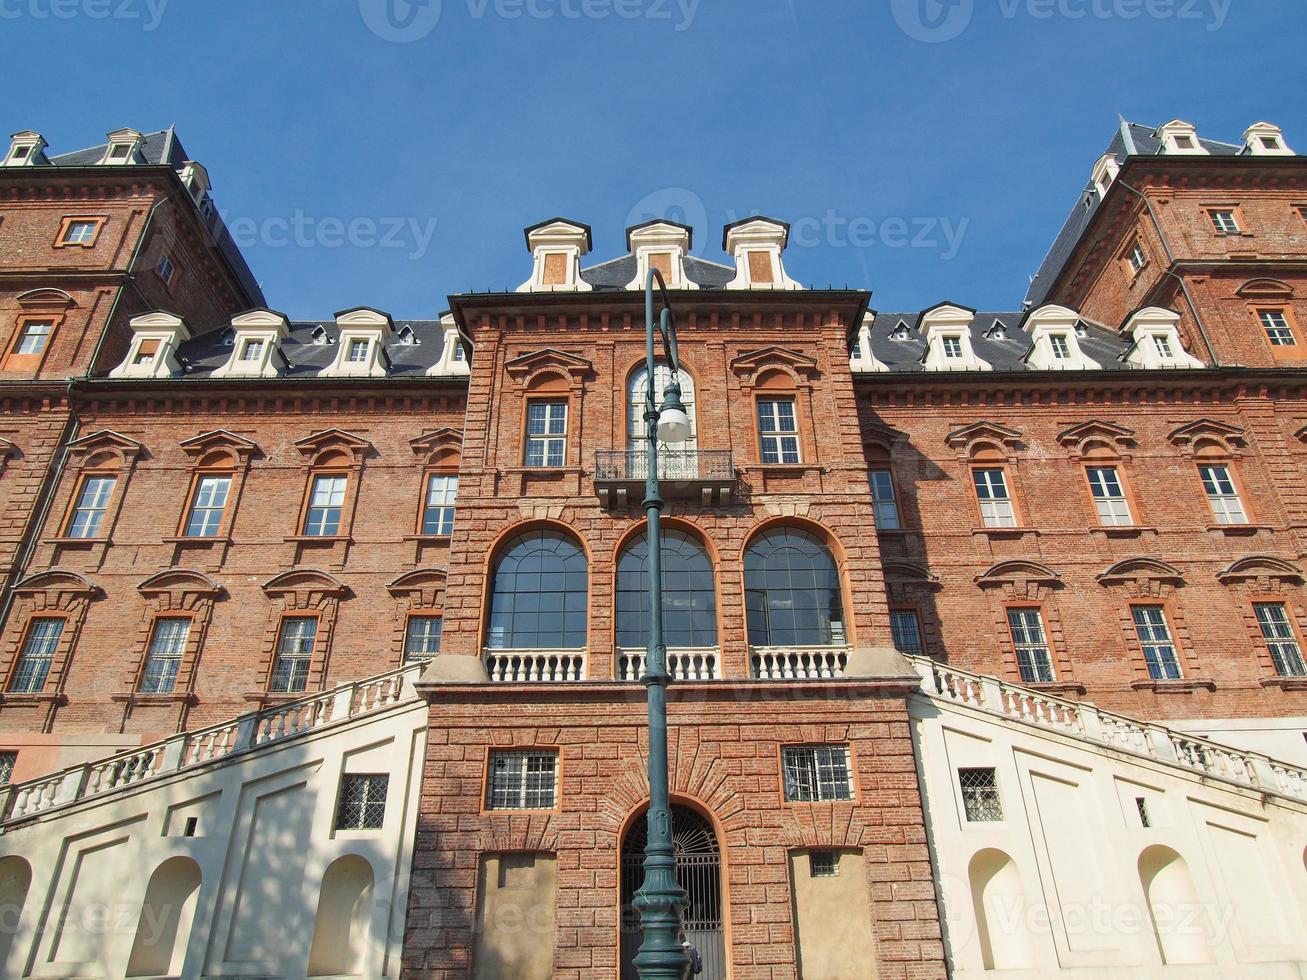 Castello del Valentino, Turin, Italie photo